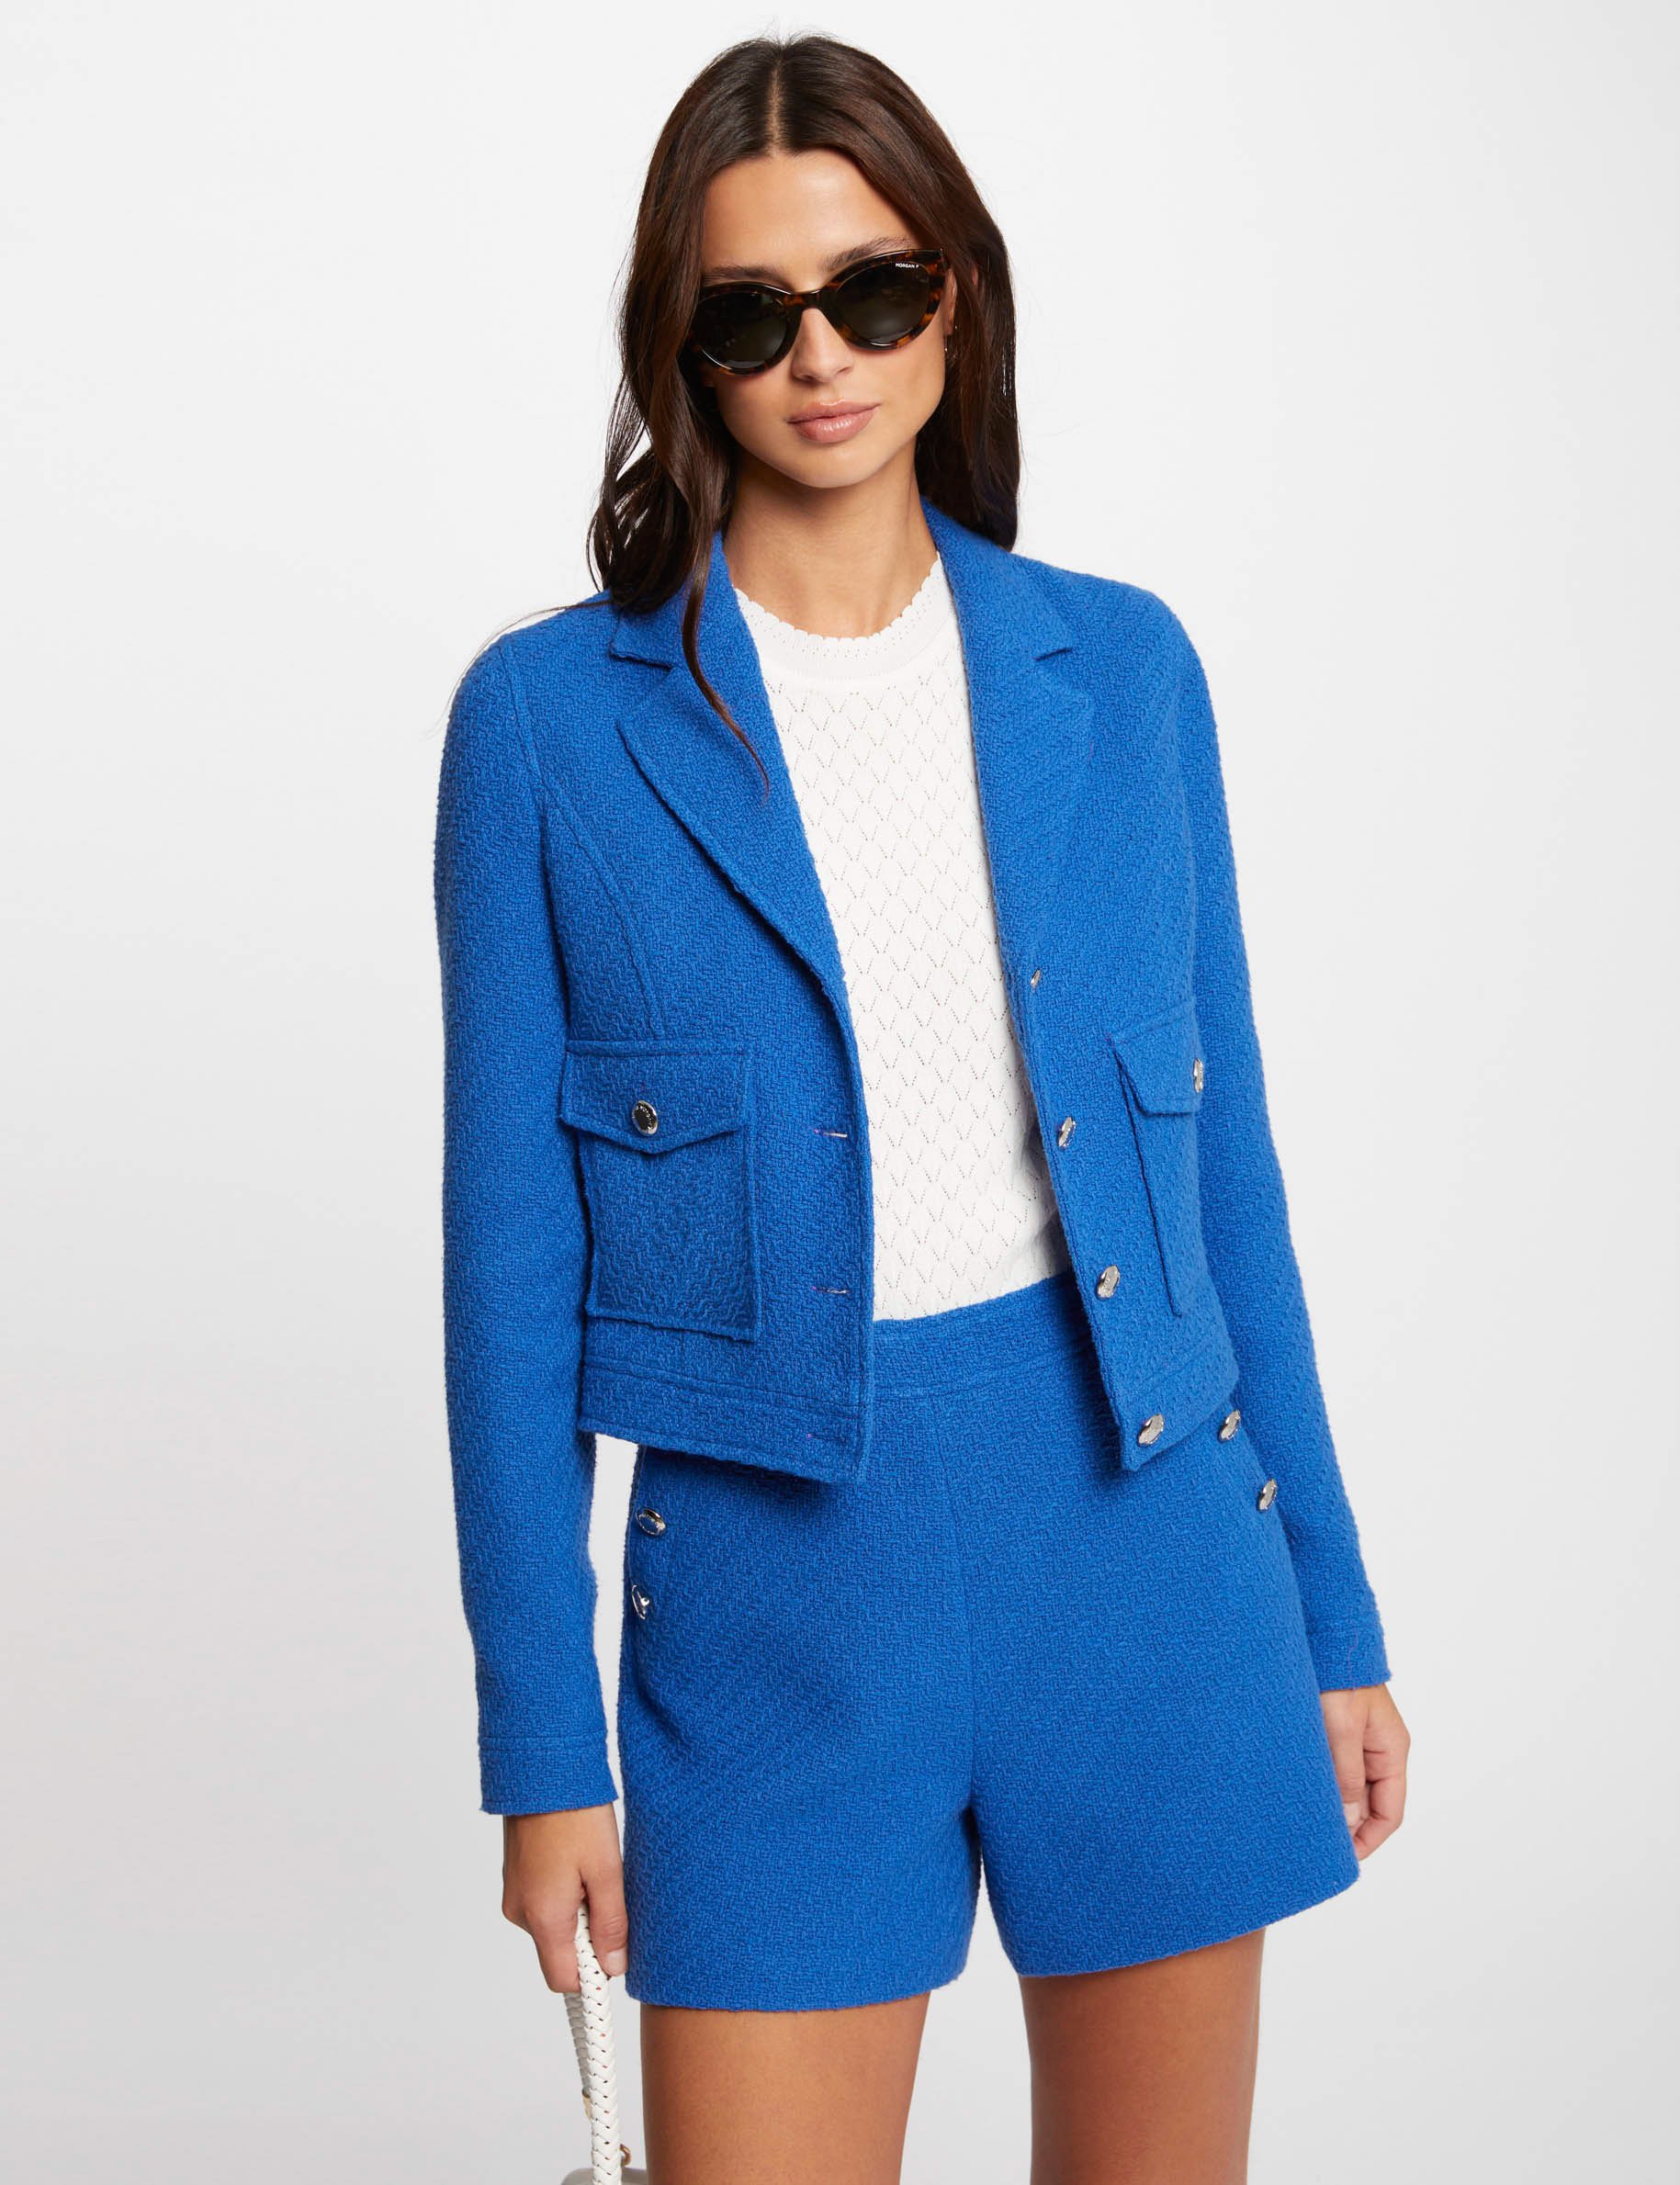 Short tweed jacket blue ladies'